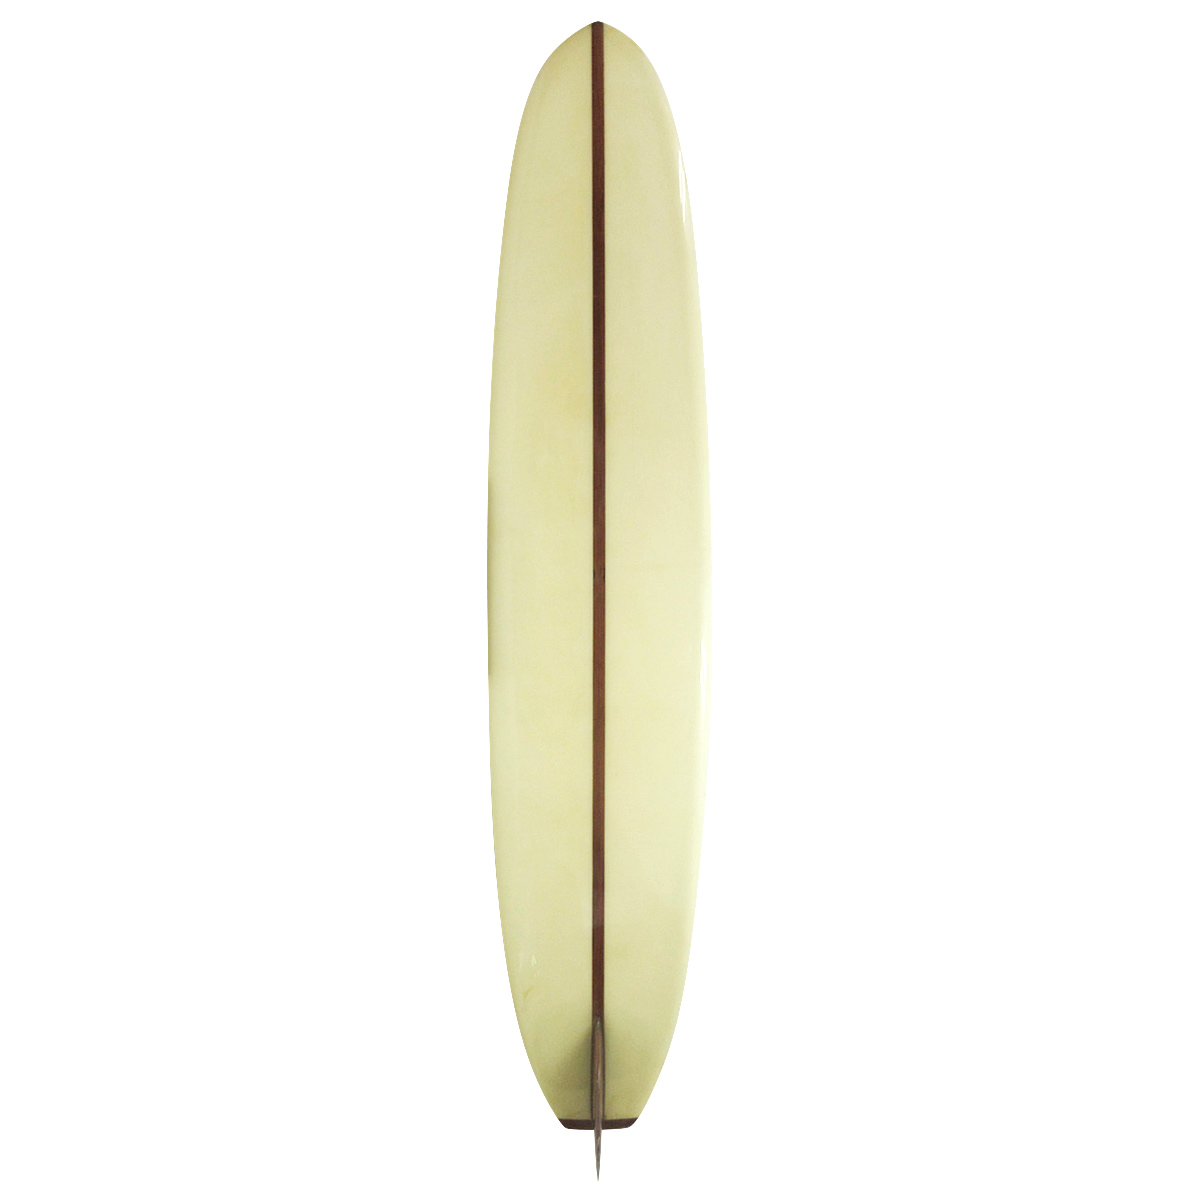 BK HAWAII SURFBOARDS / 60`S Log